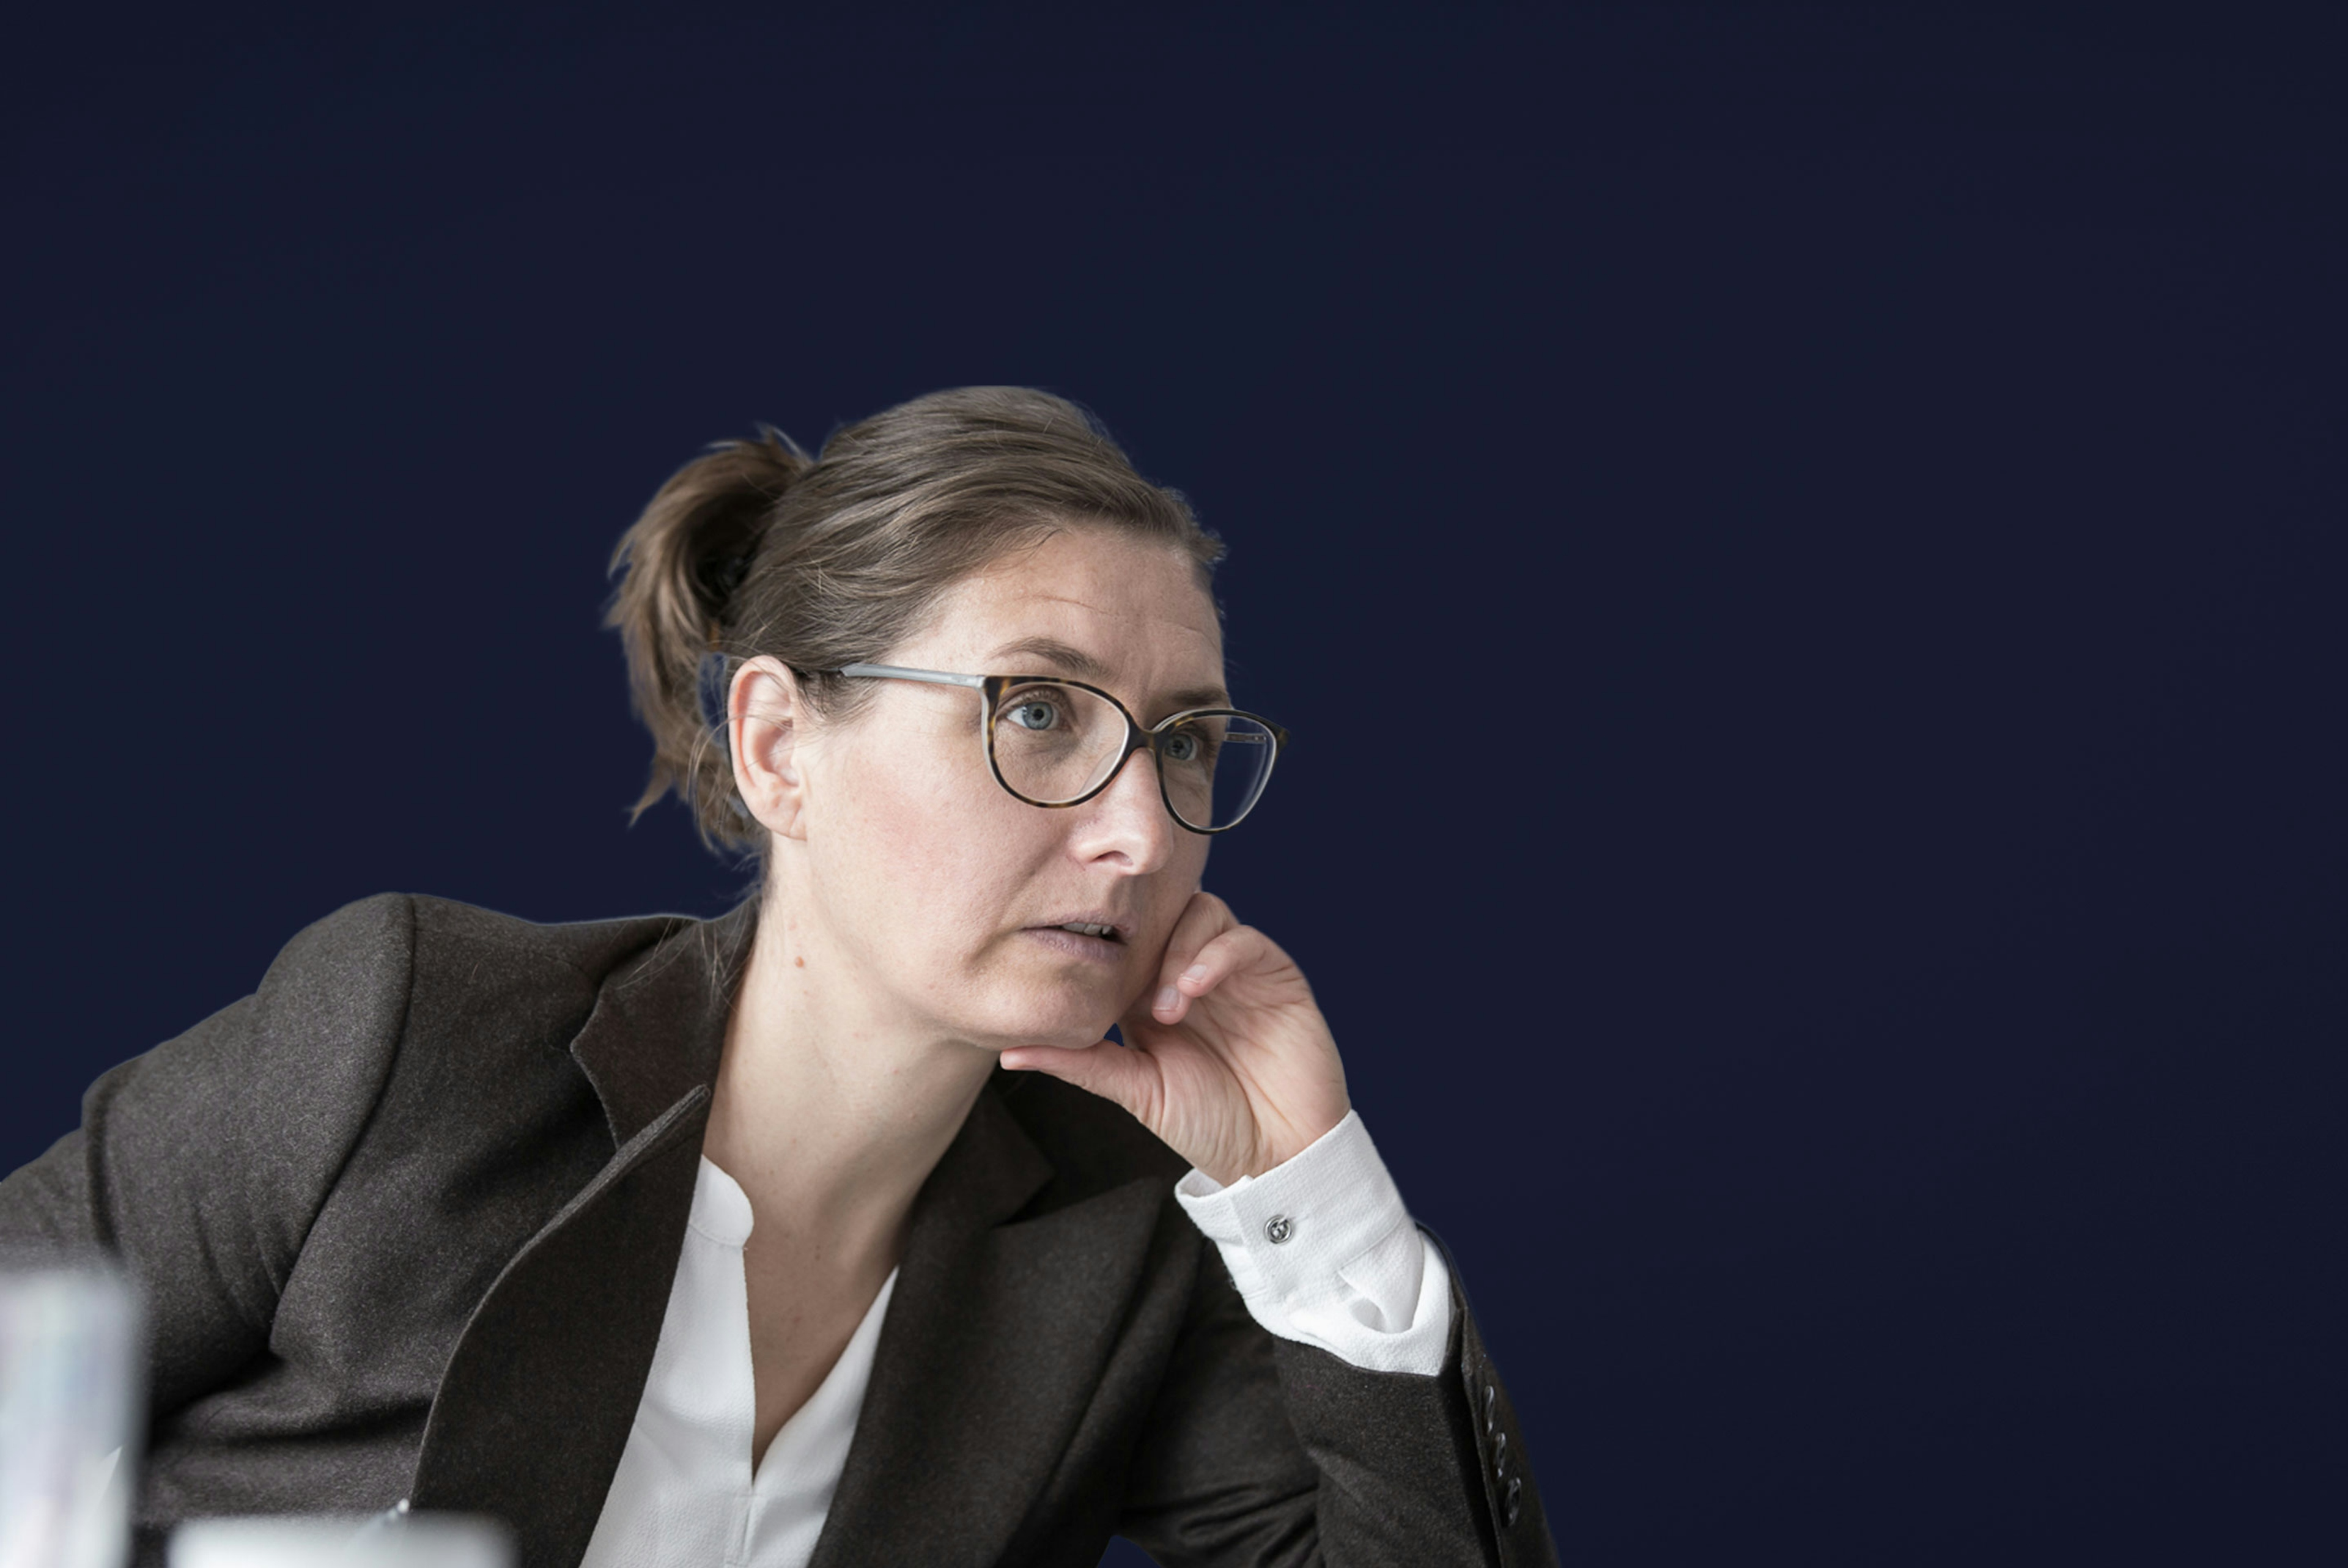 Claudia Arndt vom Klinikum Karlsruhe mit braunem Blazer und Brille